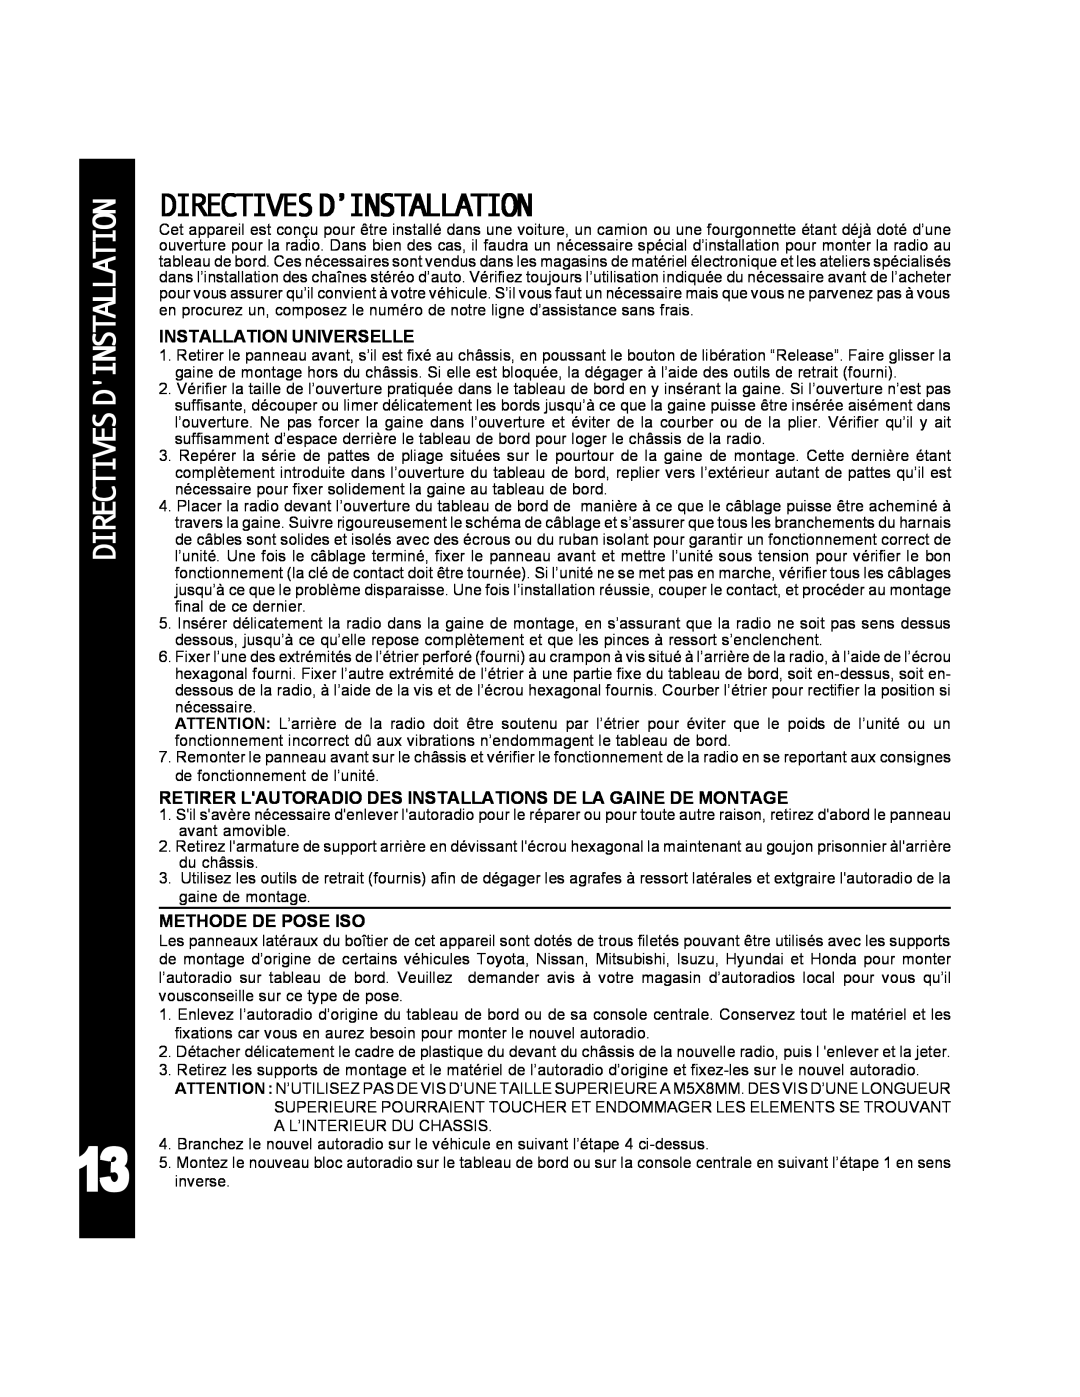 Audiovox ACD-25 manual Directivesdinstallation, Directivesd’Installation 